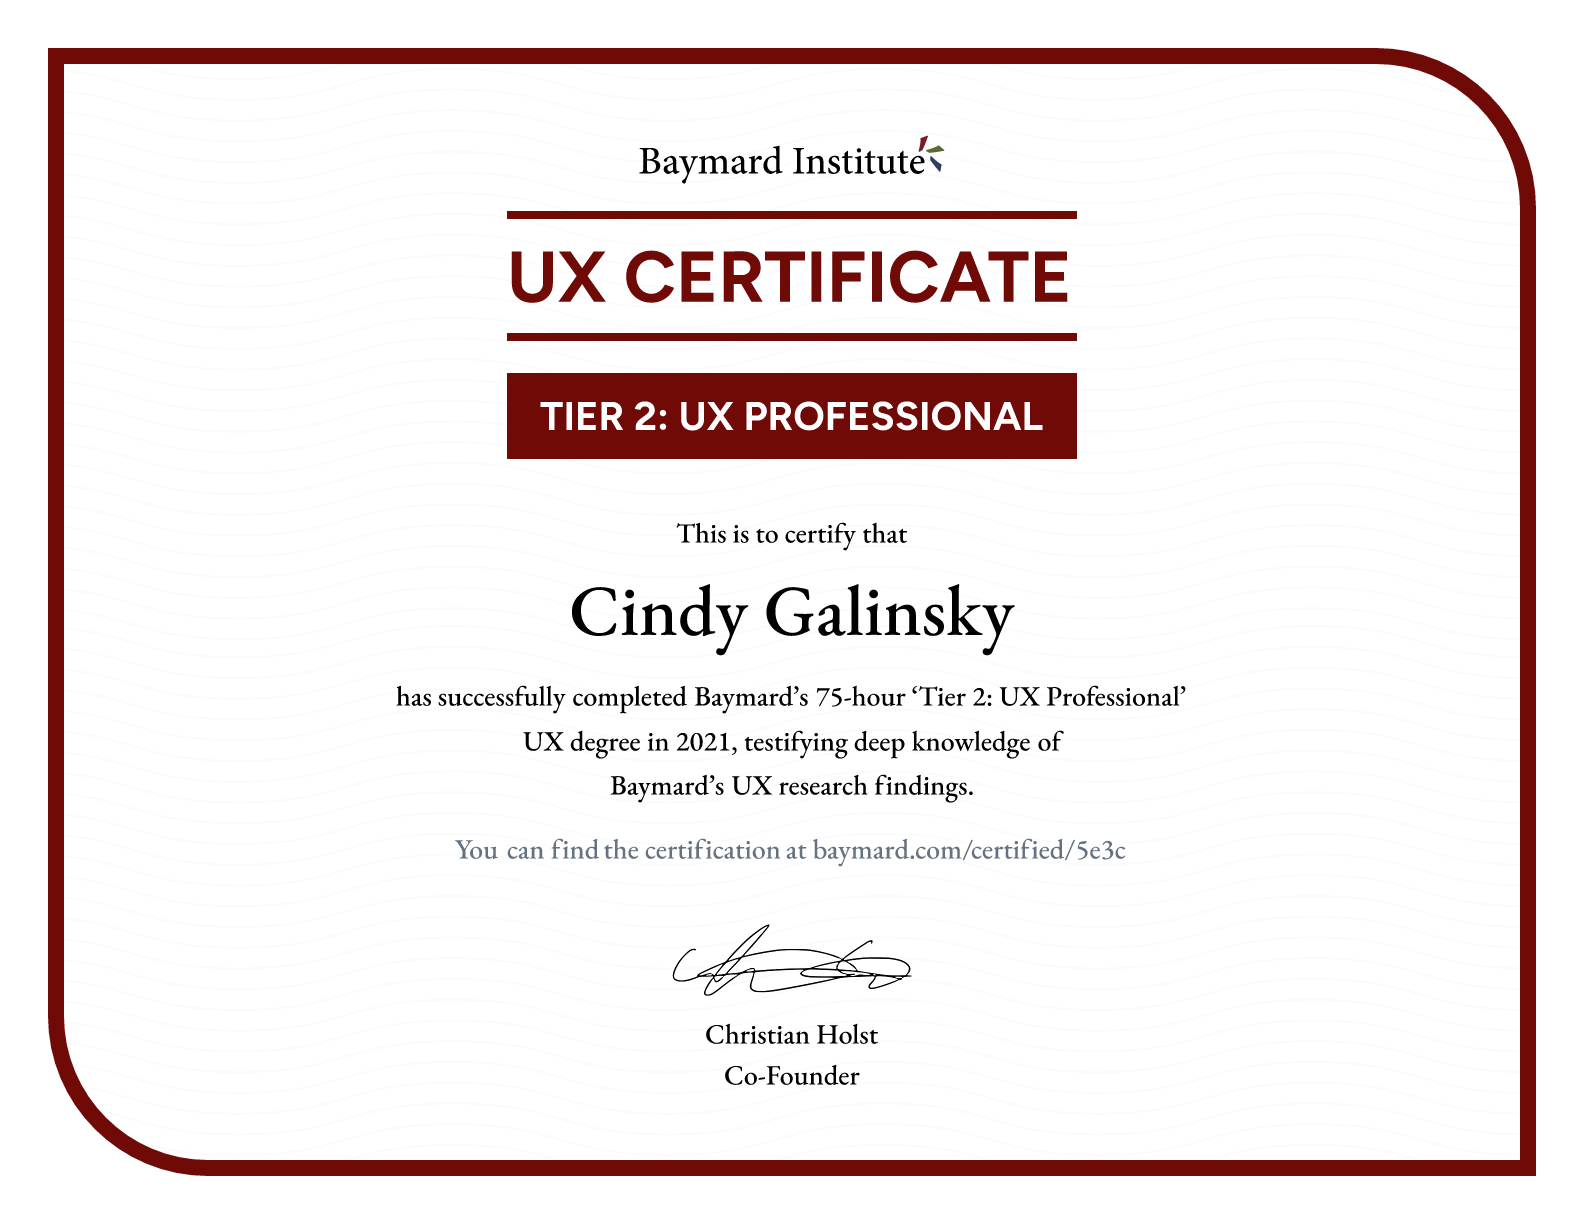 Cindy Galinsky’s certificate